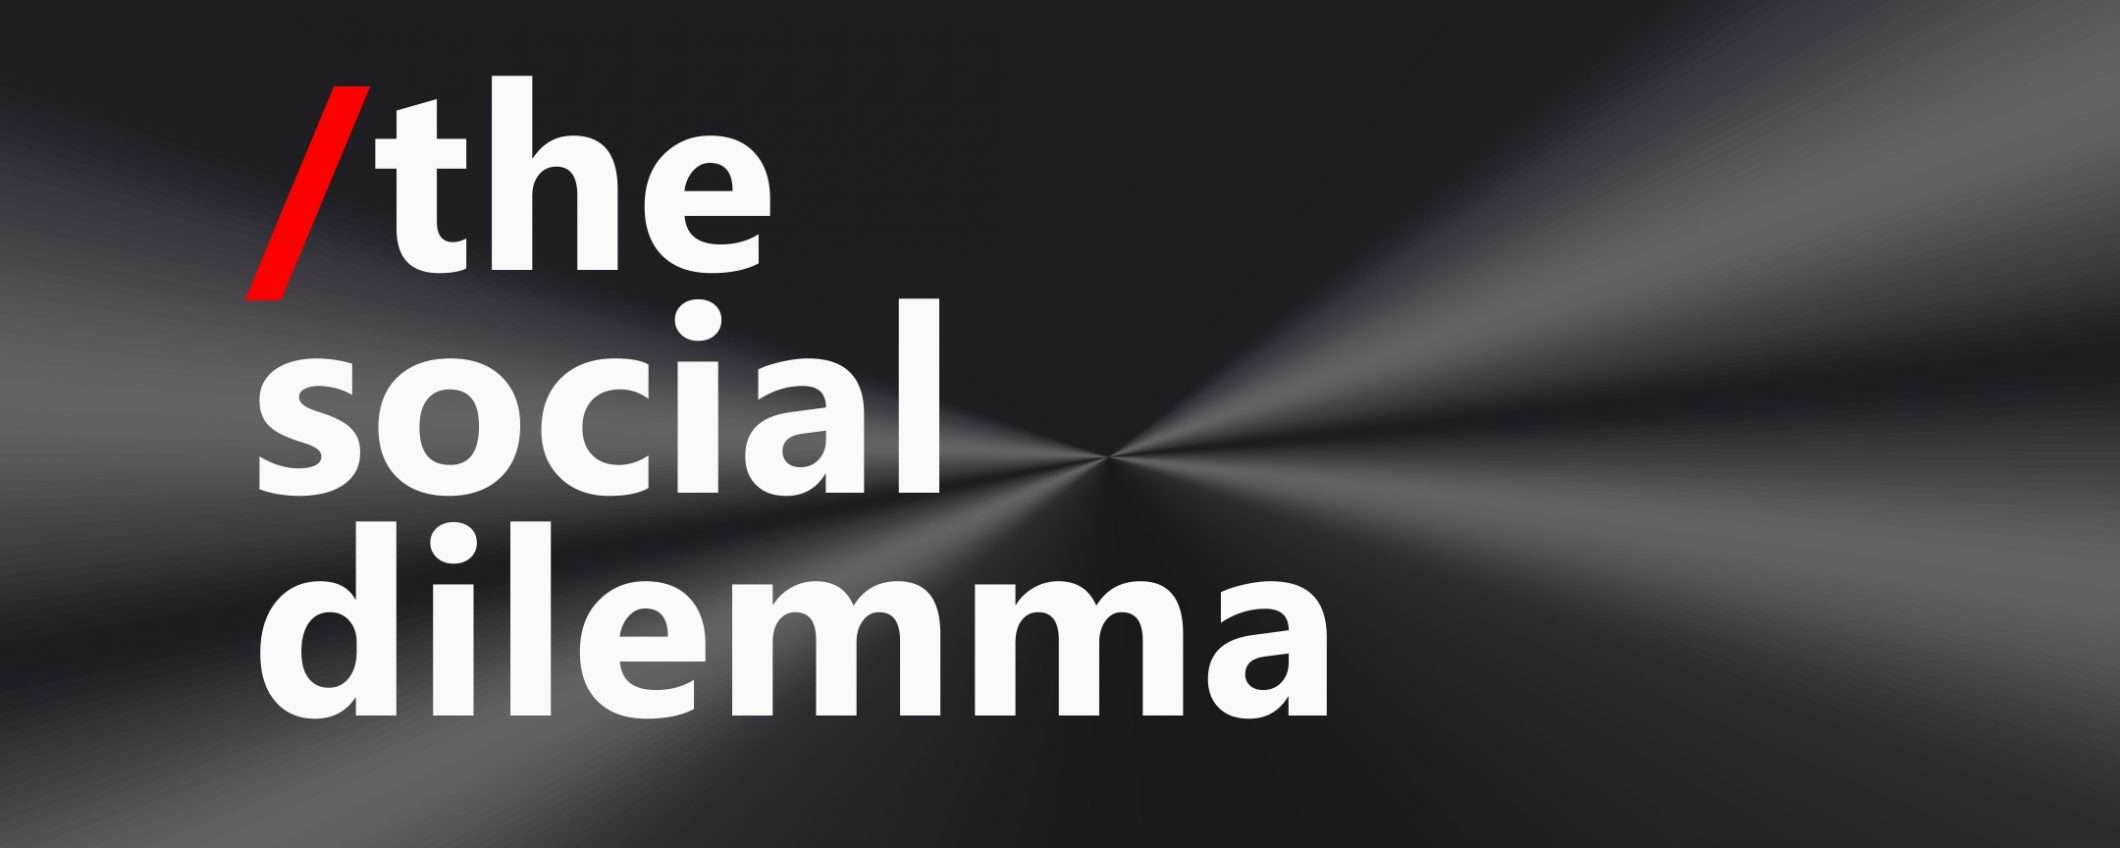 The Social Dilemma: Facebook non ci sta